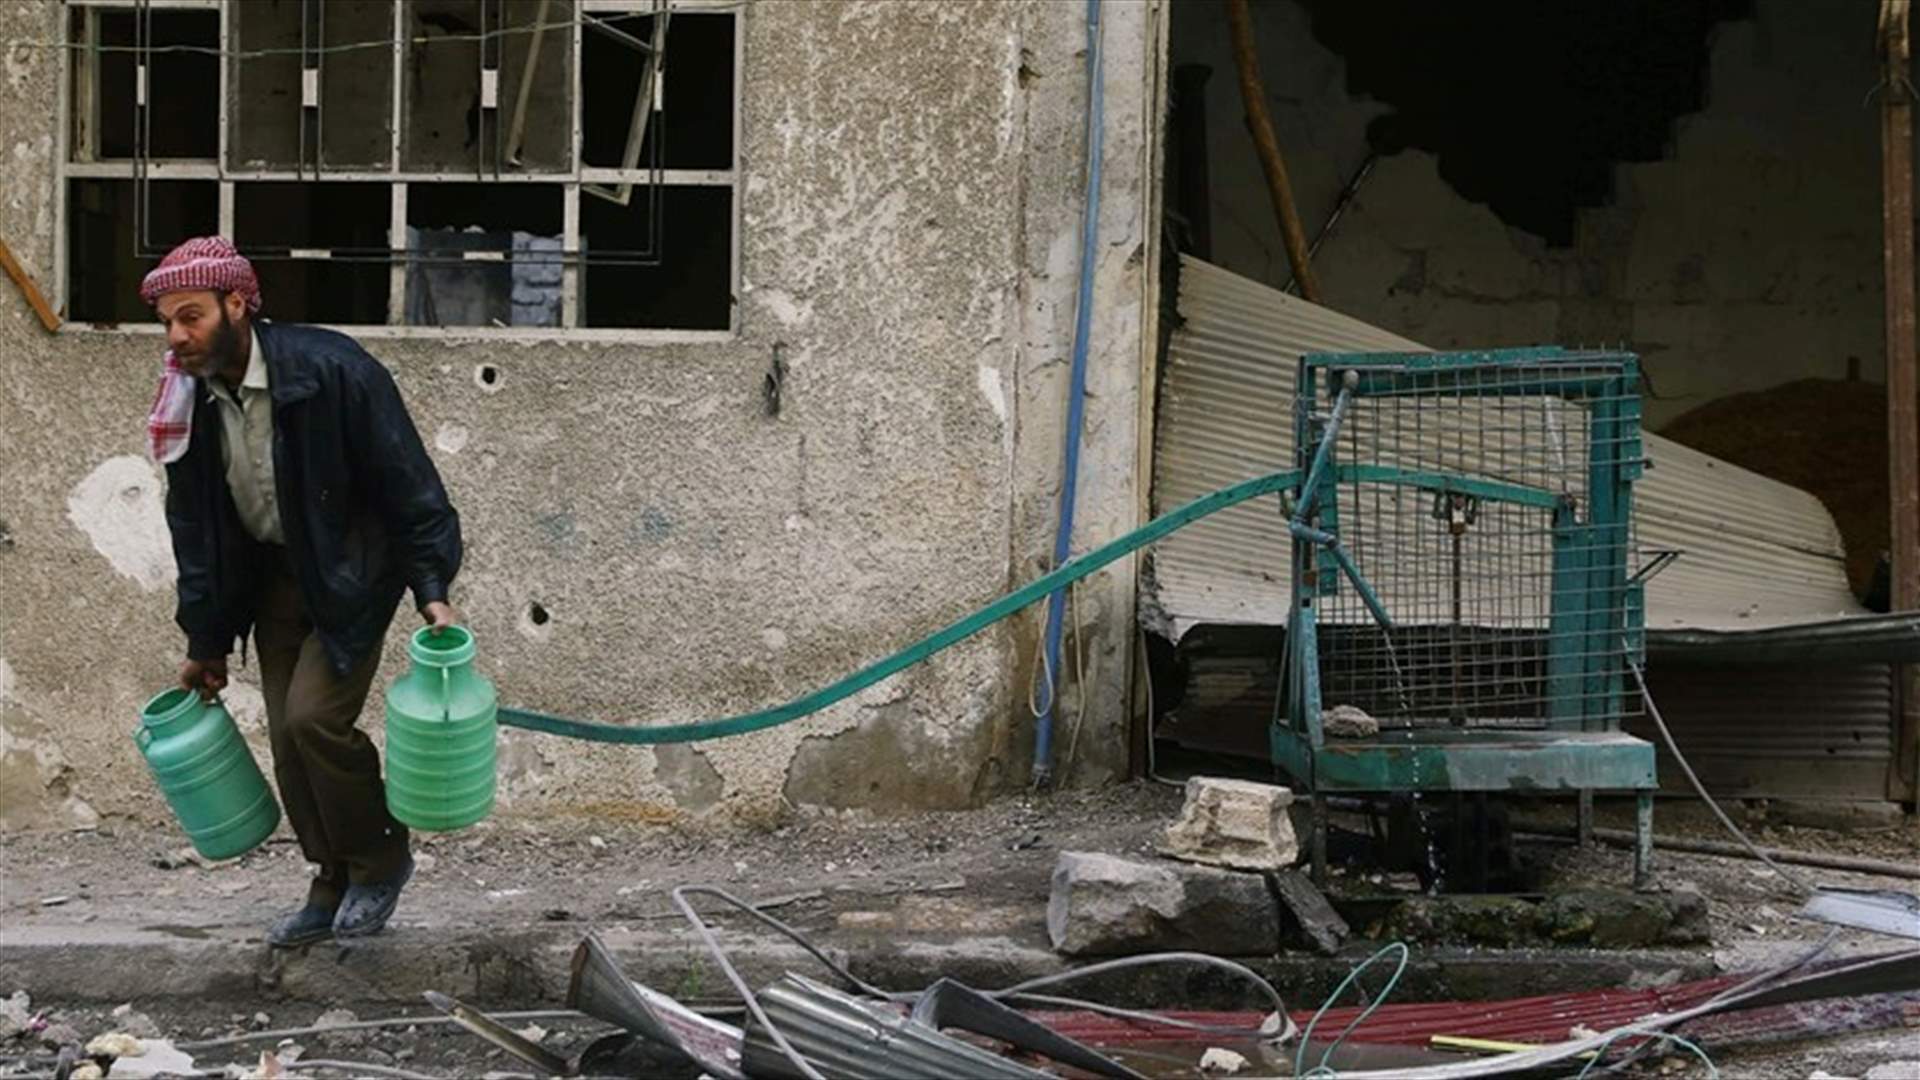 الأمم المتحدة: الحكومة والمعارضة ارتكبا جرائم حرب خلال حصار الغوطة بسوريا